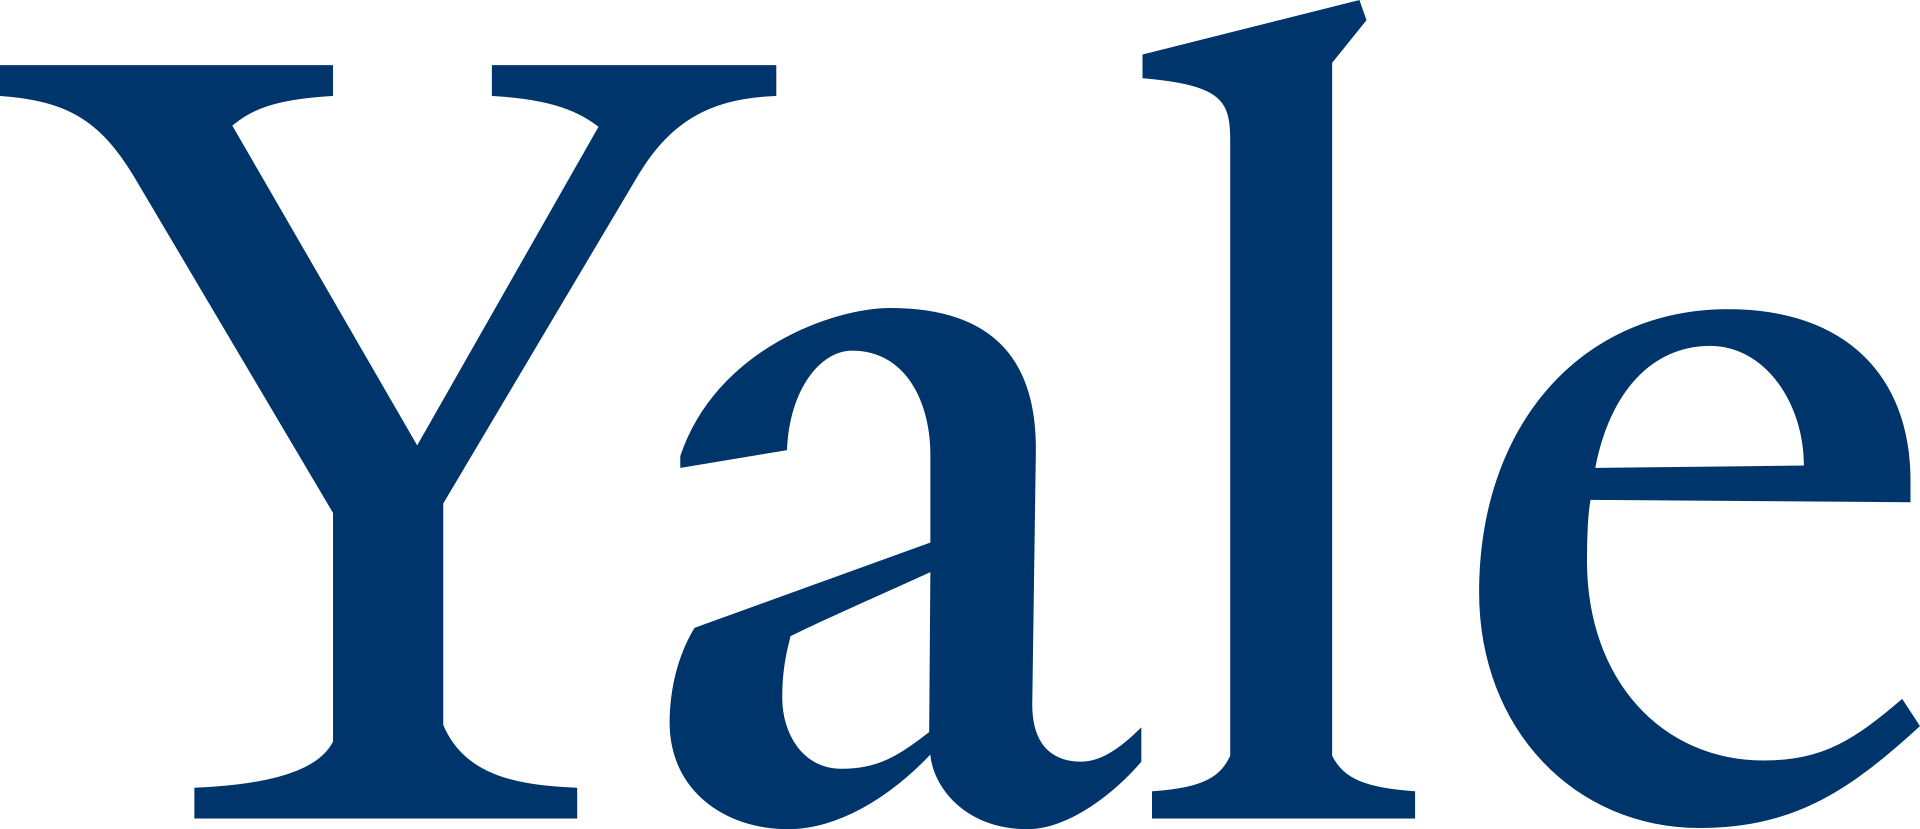 Yale University logo, By Yale University - http://identity.yale.edu/yale-logo-wordmarks, Public Domain, https://commons.wikimedia.org/w/index.php?curid=37348190